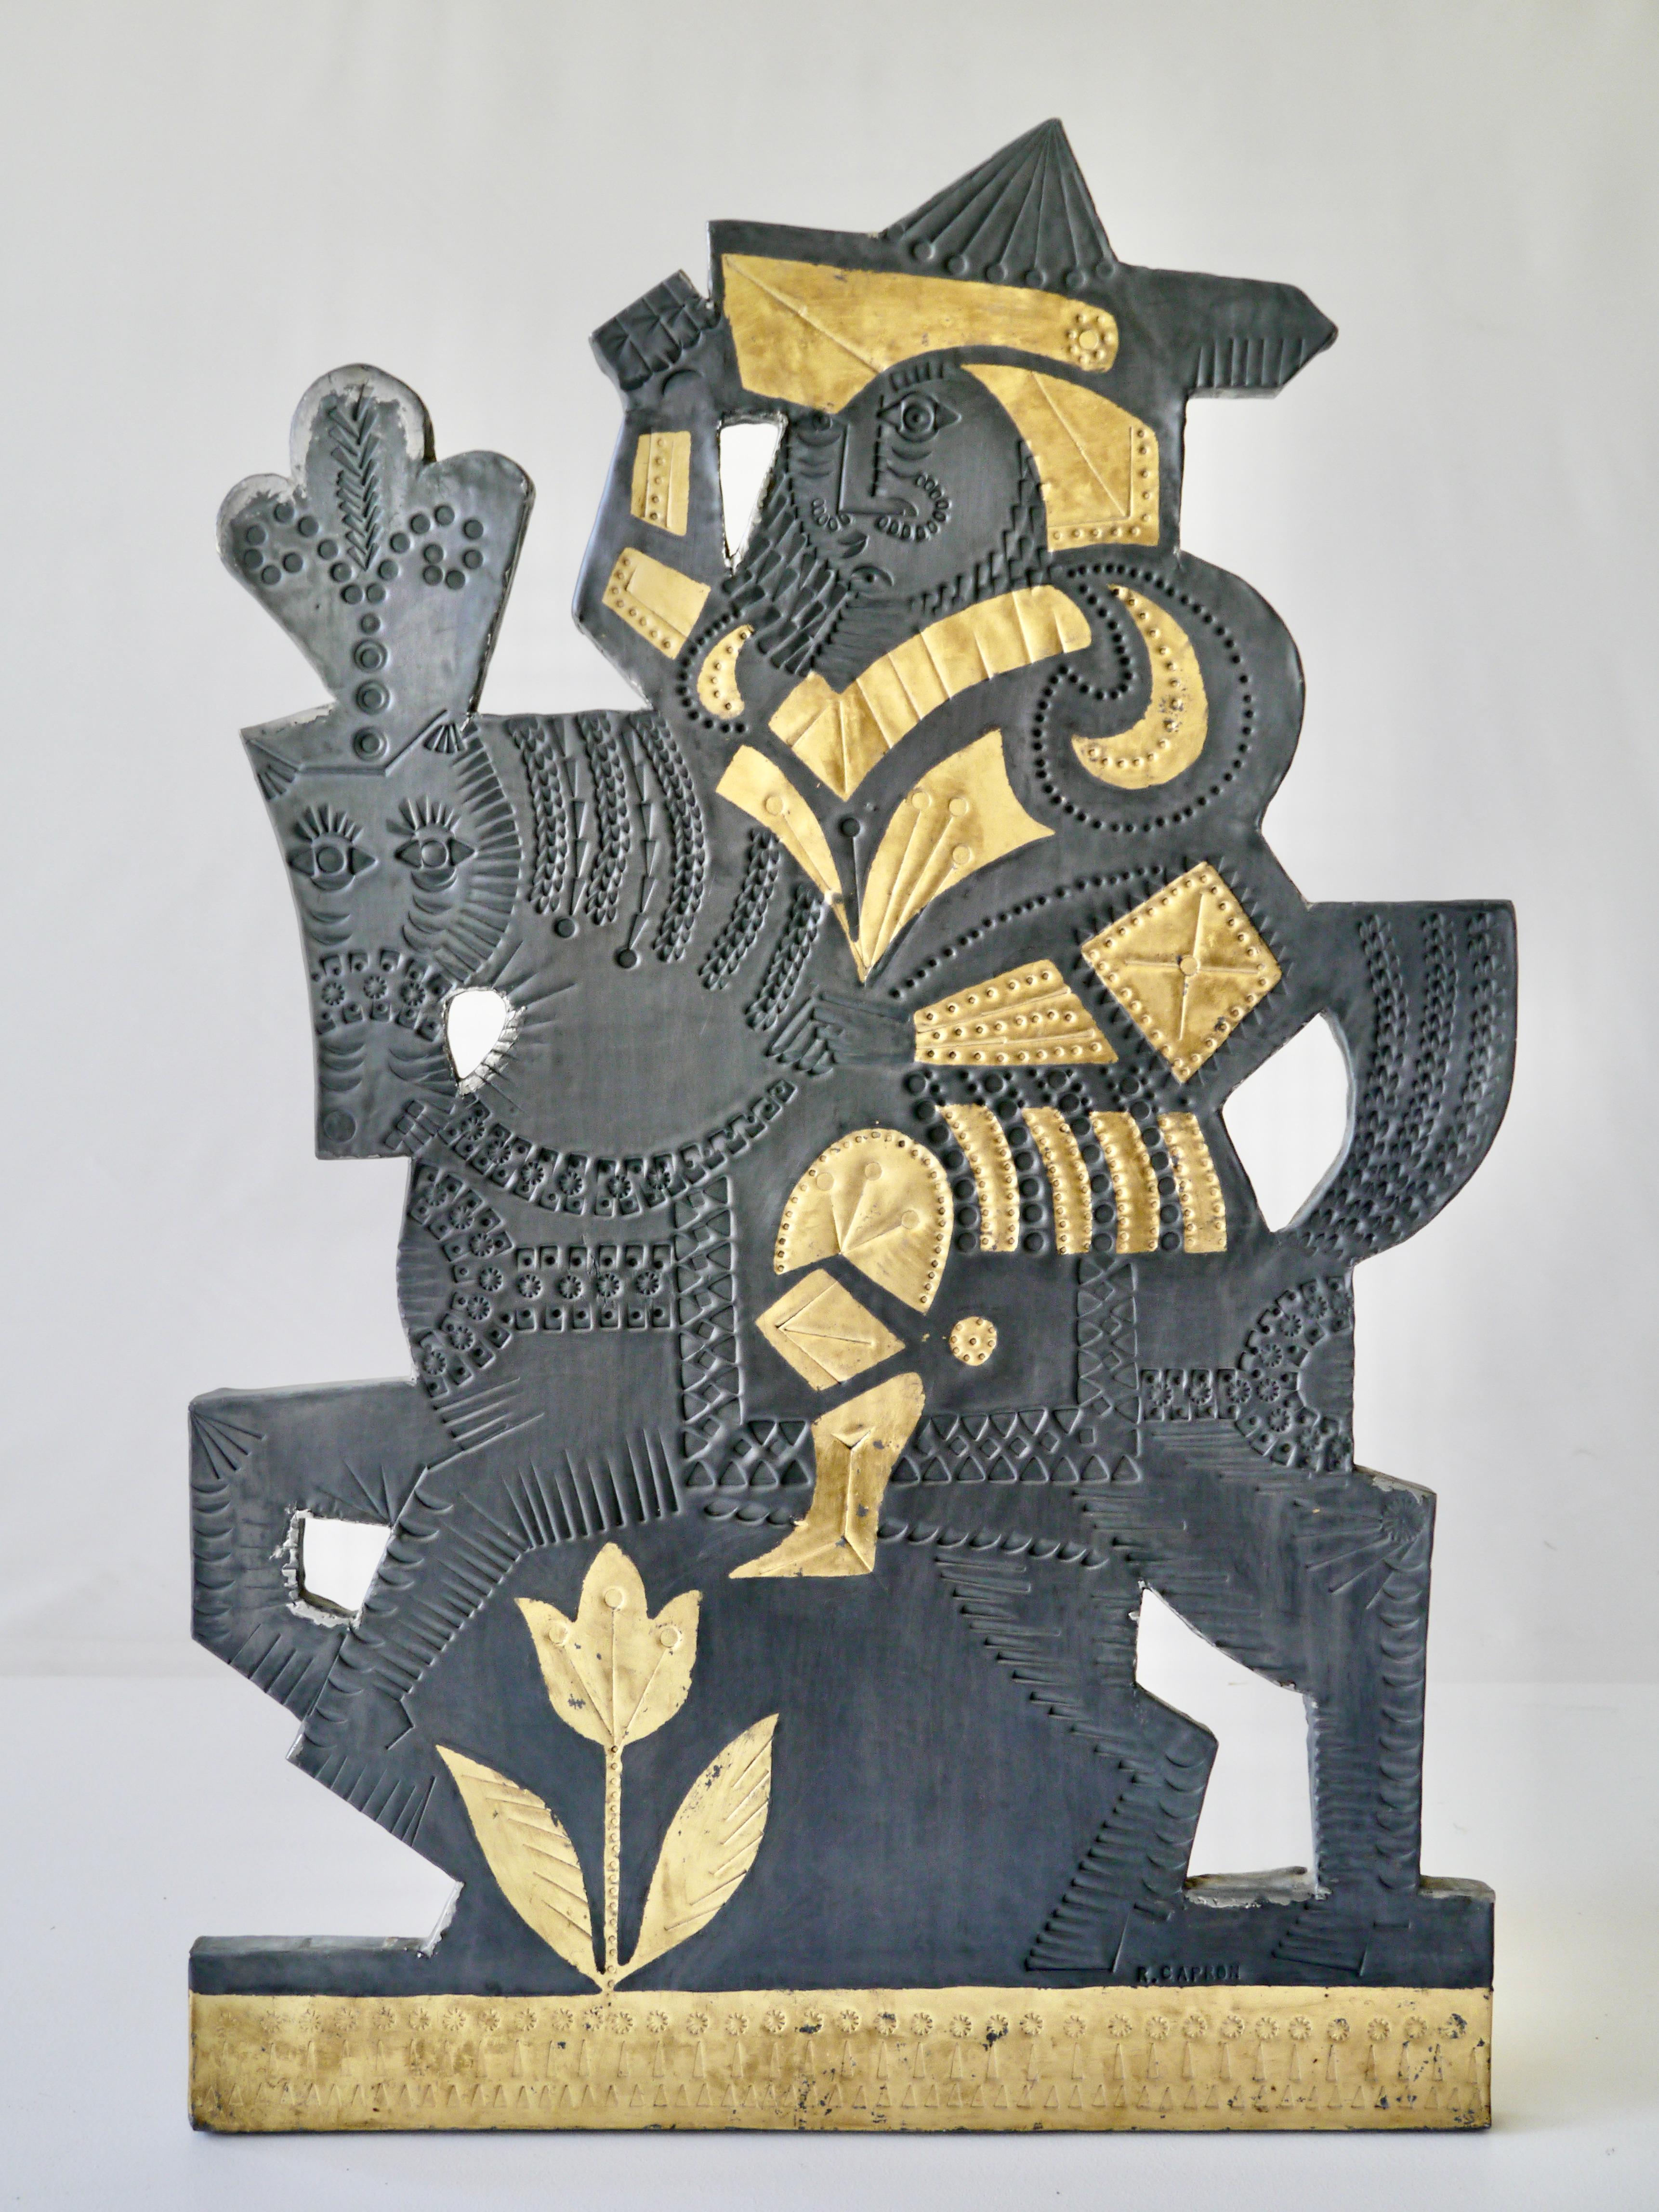 Exceptionnel panneau décoratif sur le motif d'un chevalier espagnol réalisé à 4 mains par les Artistes Jean Derval et Roger Capron. 
Estampillé feuille de plomb rehaussée d'or et signé 